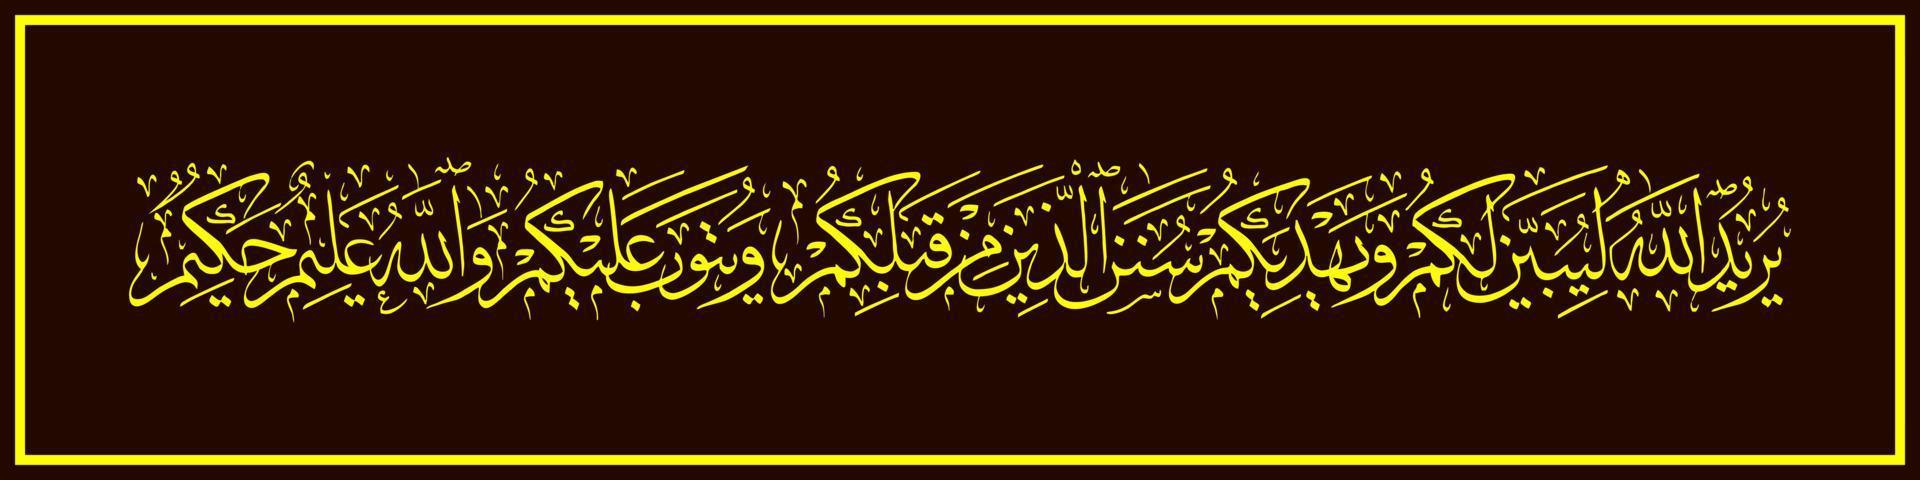 arabische kalligraphie, al qur'an surah an nisa' 26, übersetzung allah will dir sein gesetz erklären und dir die lebensweisen derer zeigen, die vor dir propheten waren vektor